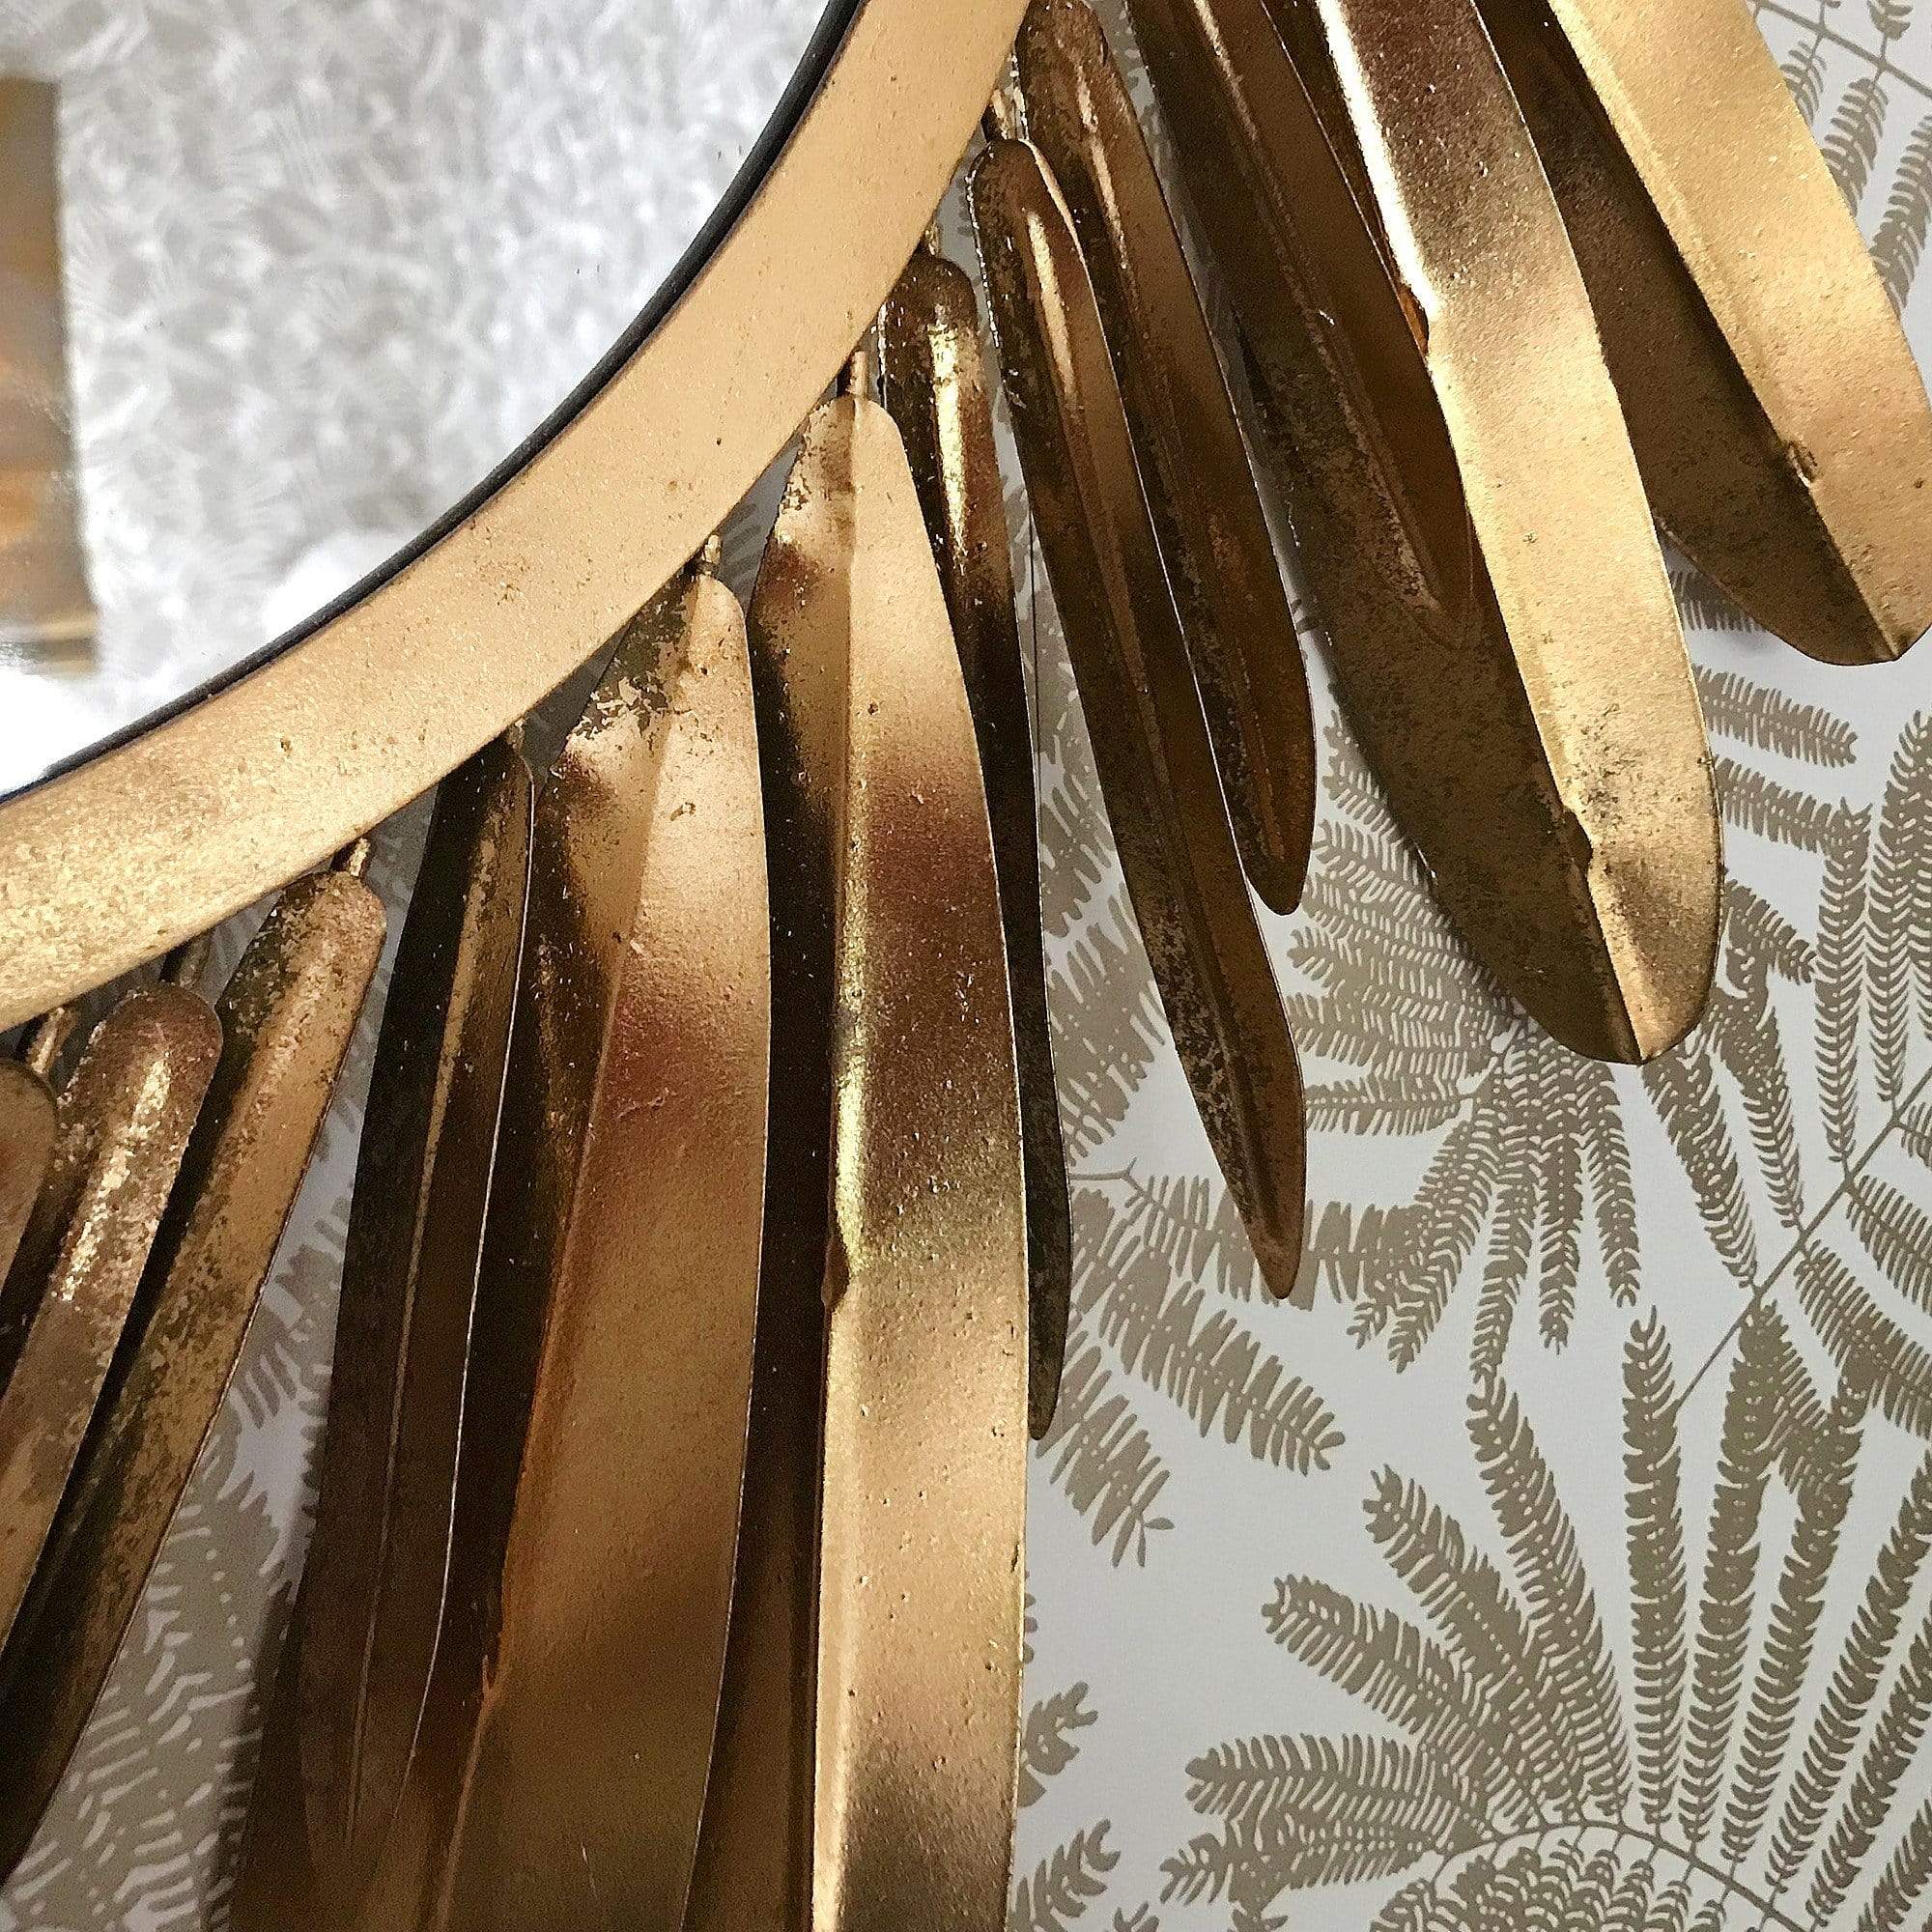 Golden Feather Mirror